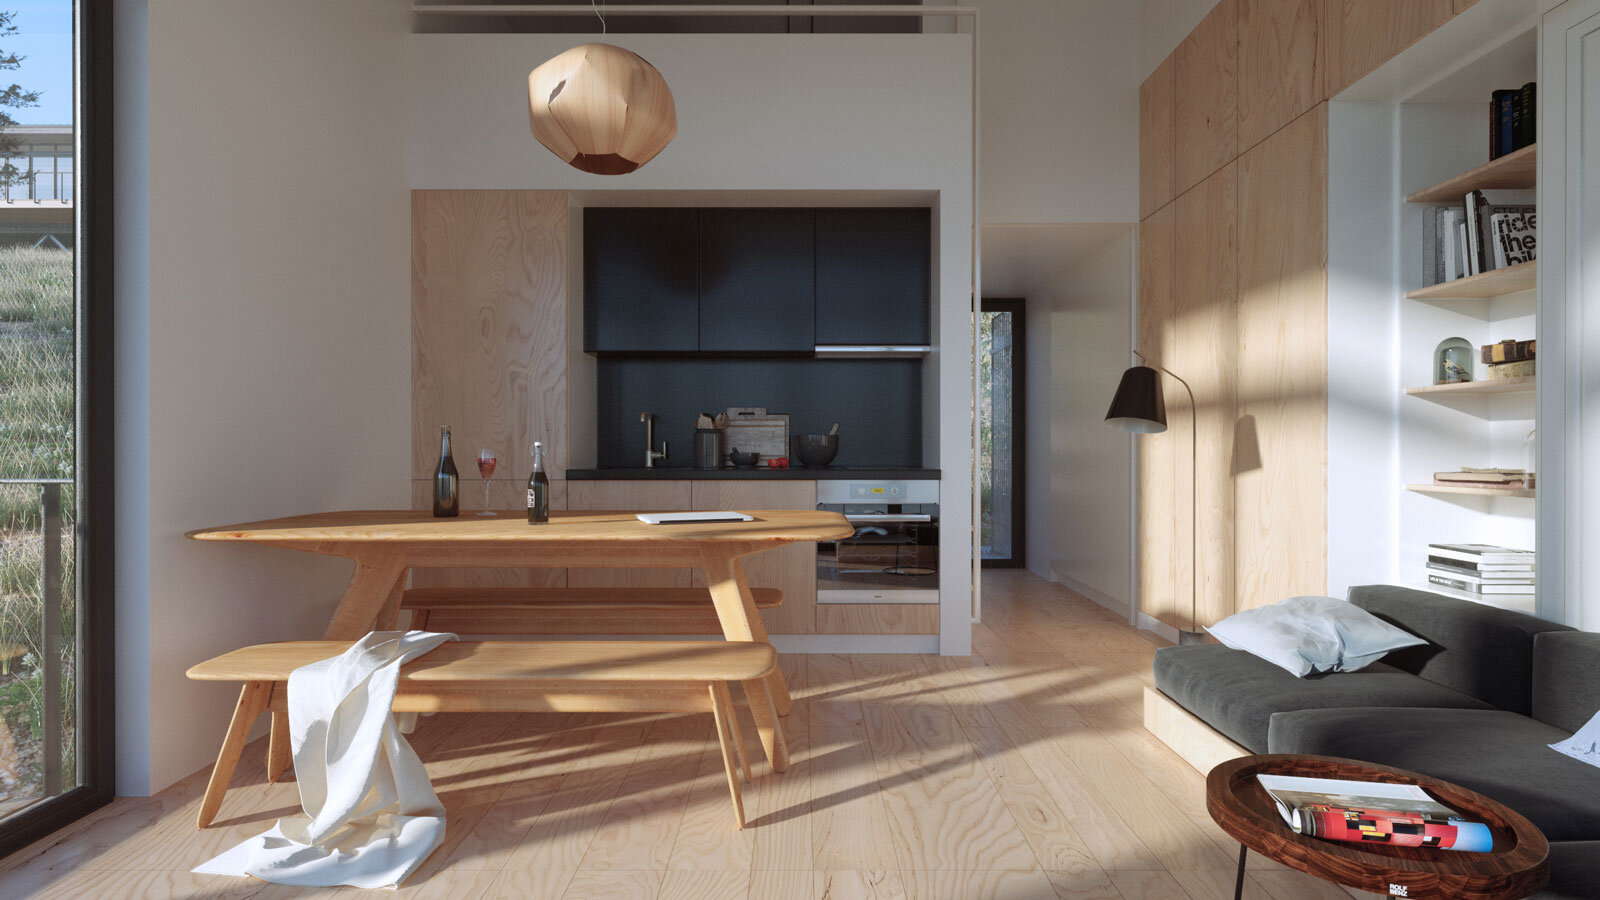 Craftr-Architecture-Overlook360-Cabin-07-kitchen-area.jpg